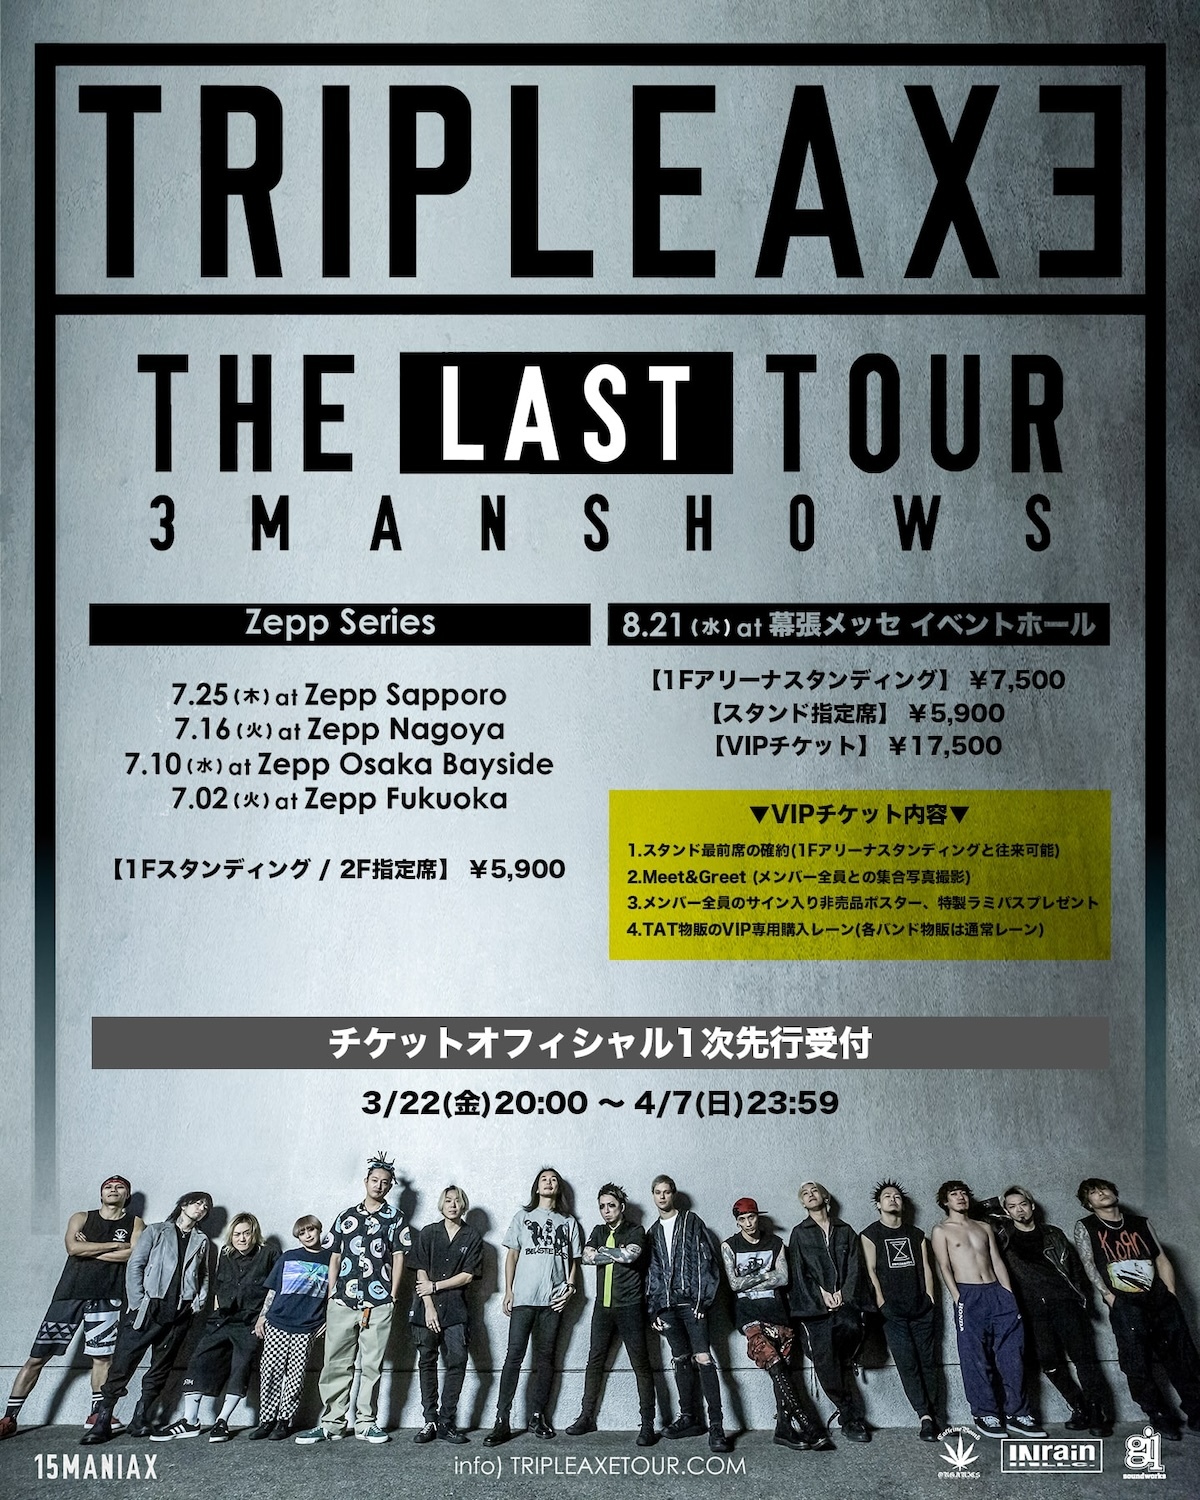 『TRIPLE AXE THE LAST TOUR』